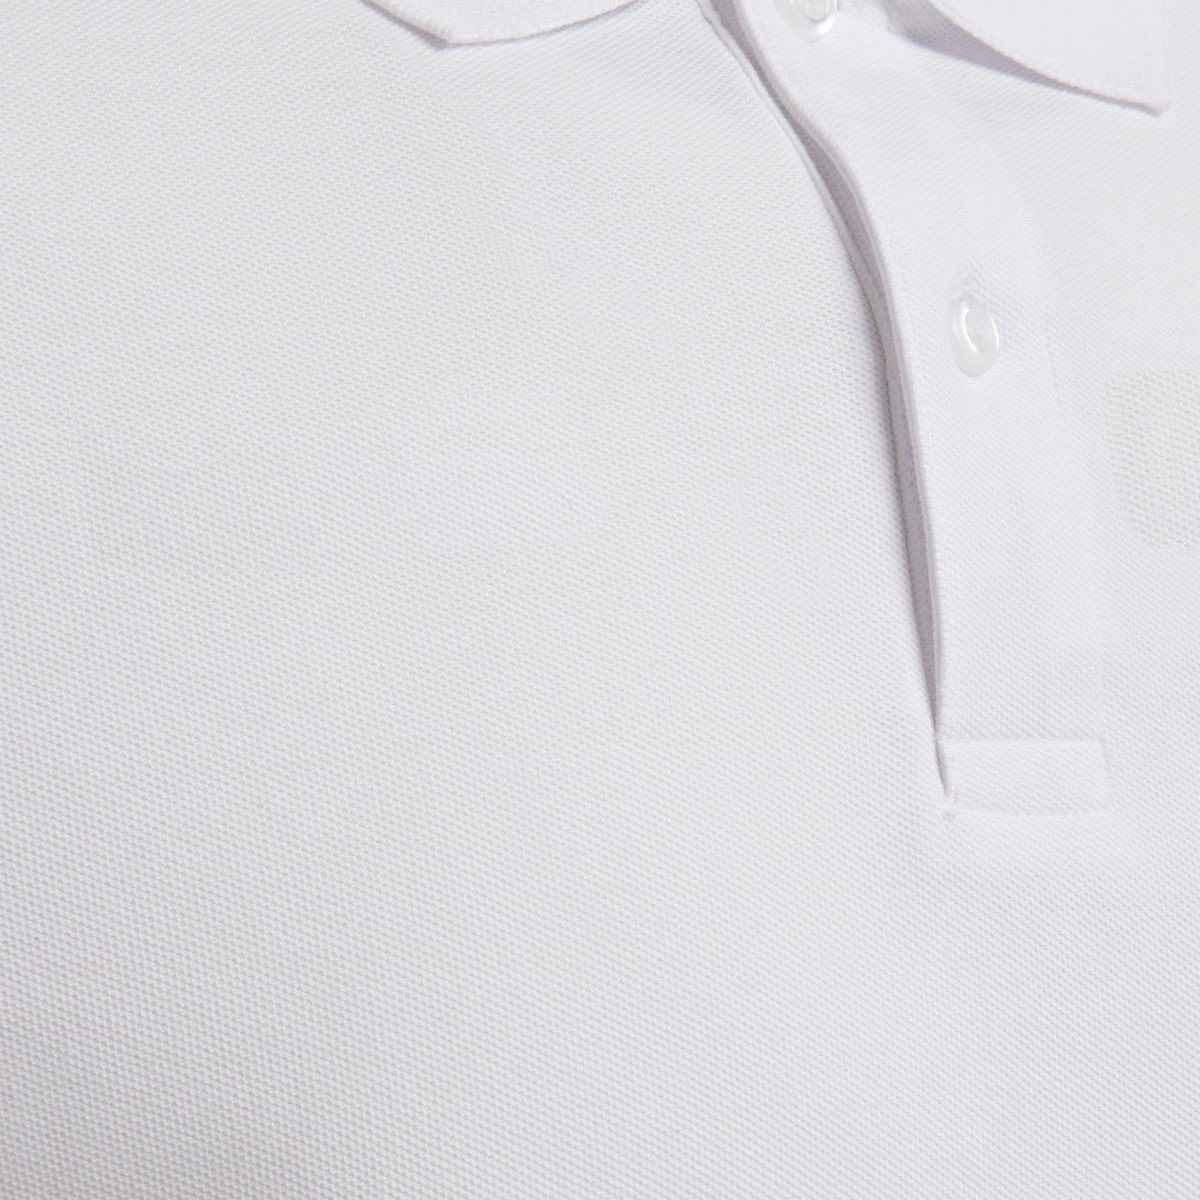 hummel White POLO T-Shirt Poloshirts Herren HMLGOMover 9001 COTTON -